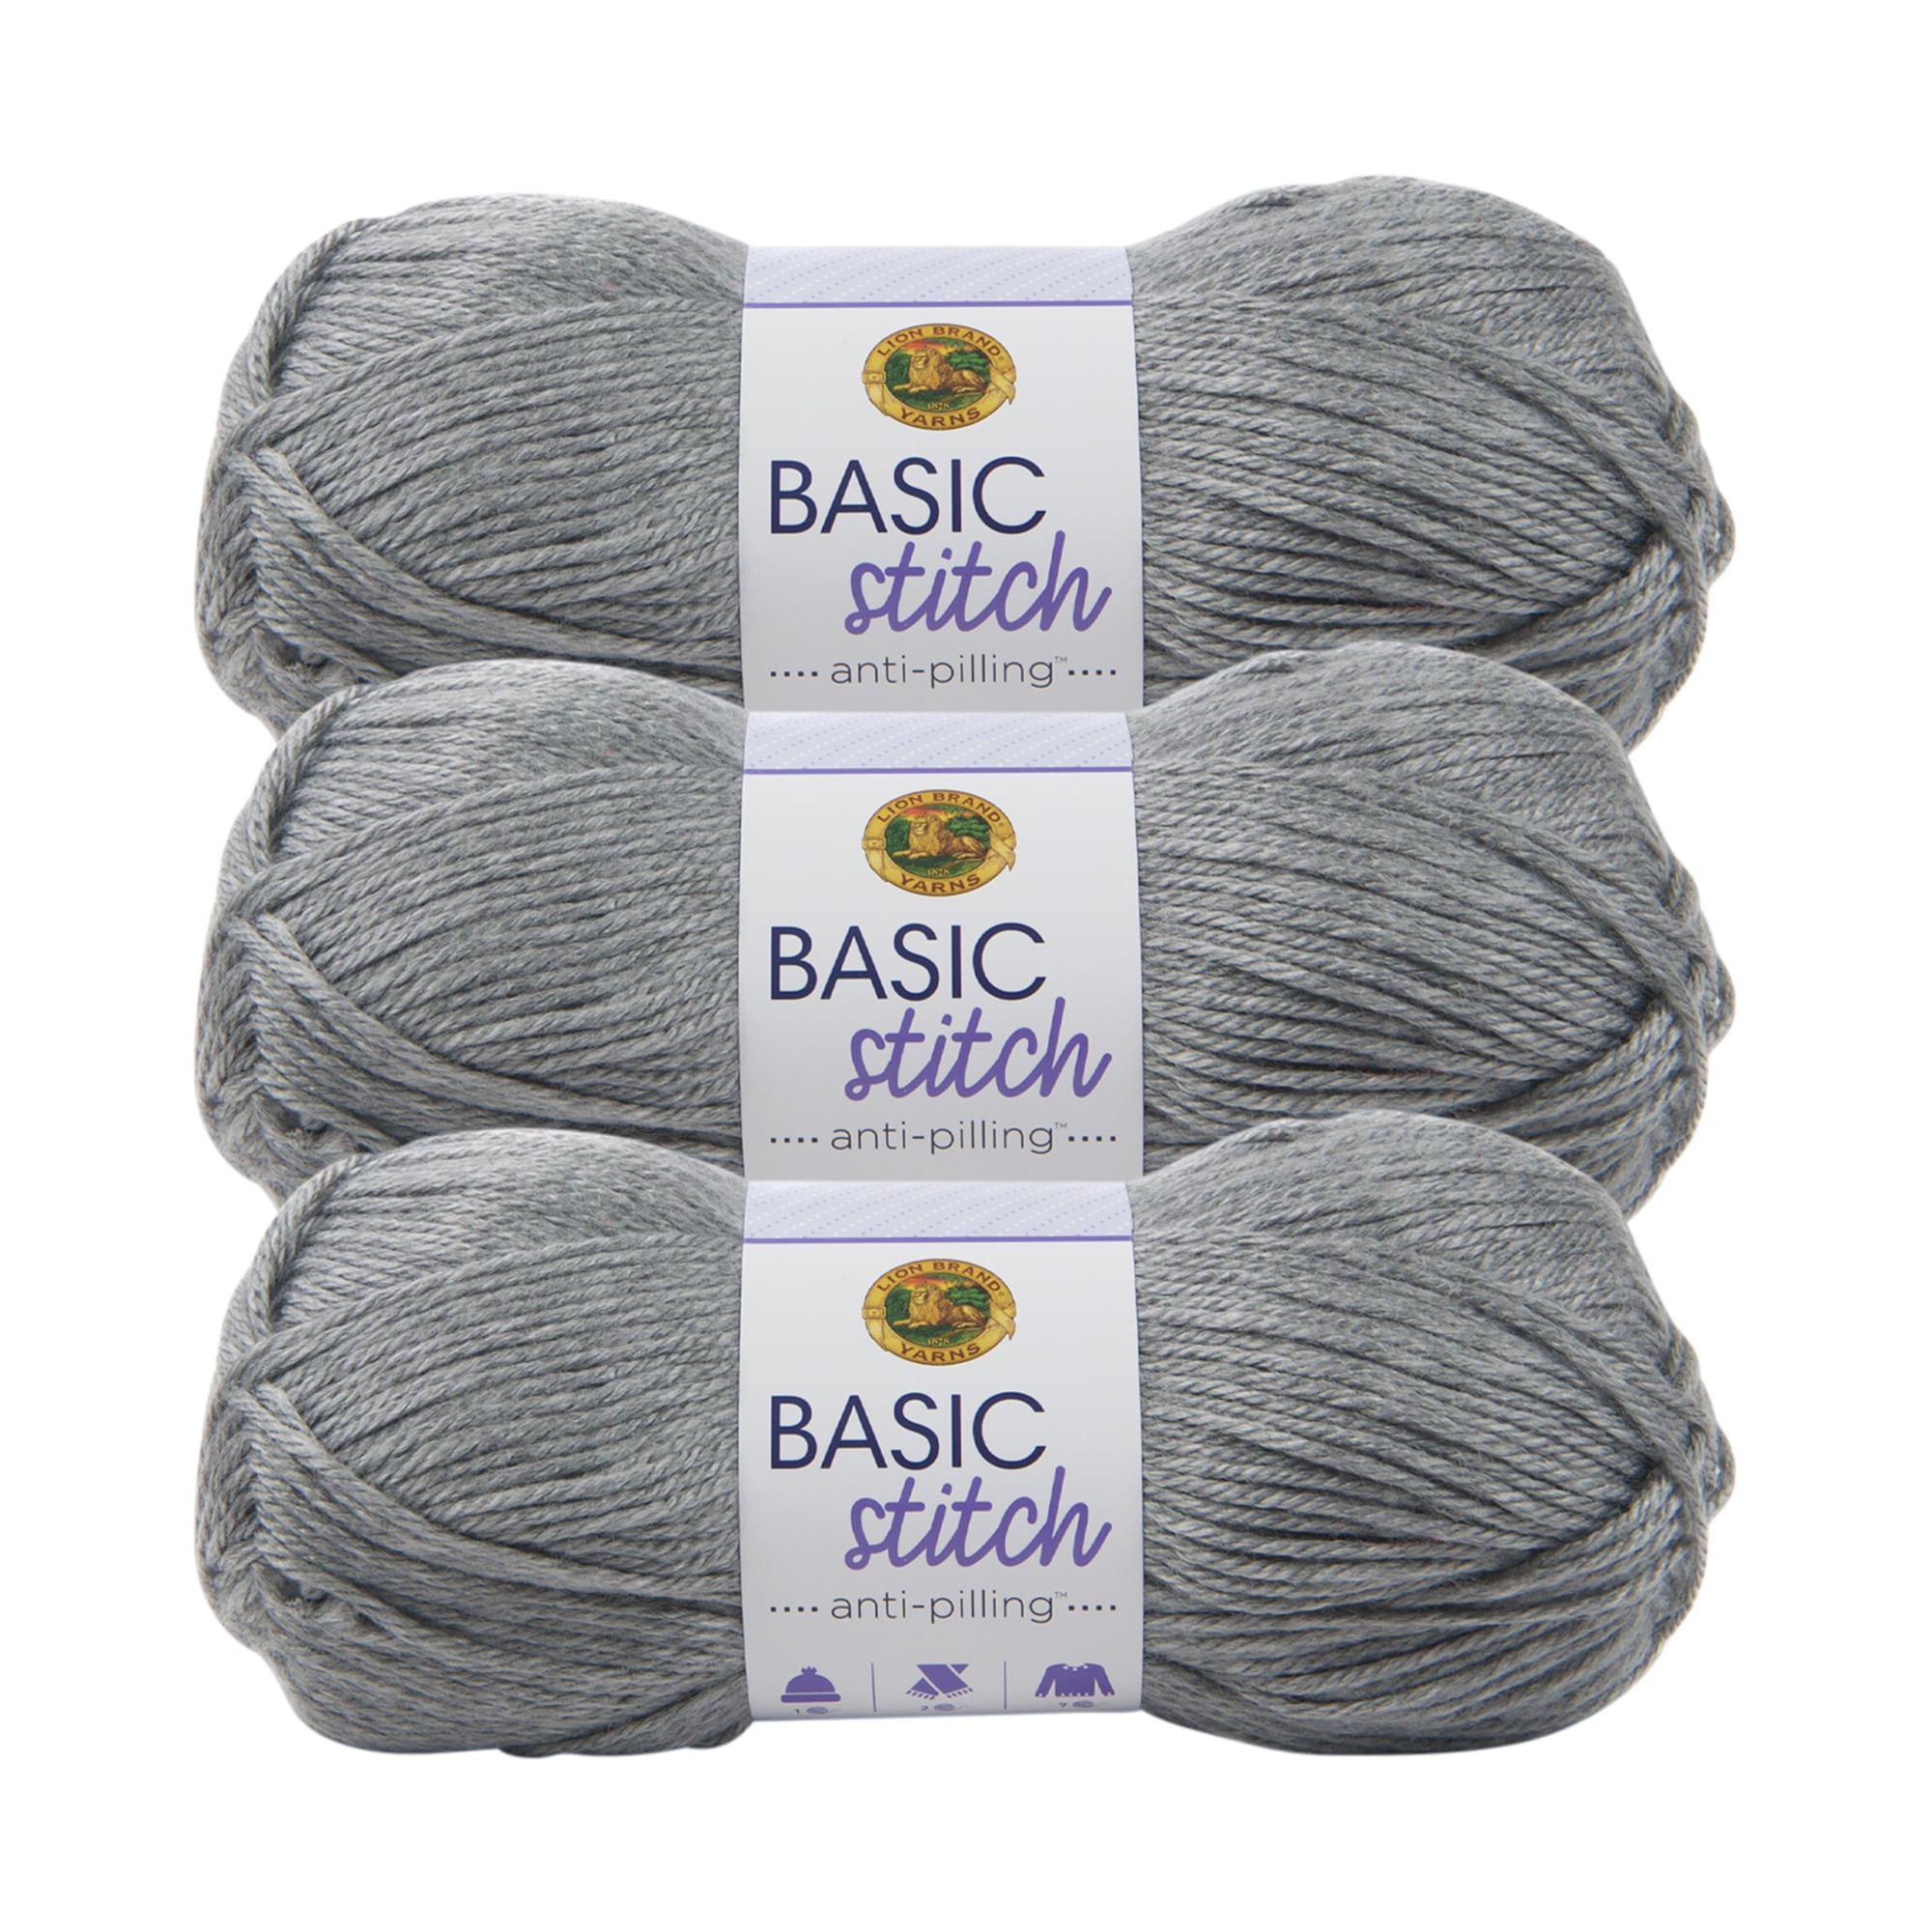 Grass Lion Brand Yarn Basic Stitch Anti Pilling Yarn 3 Pack 